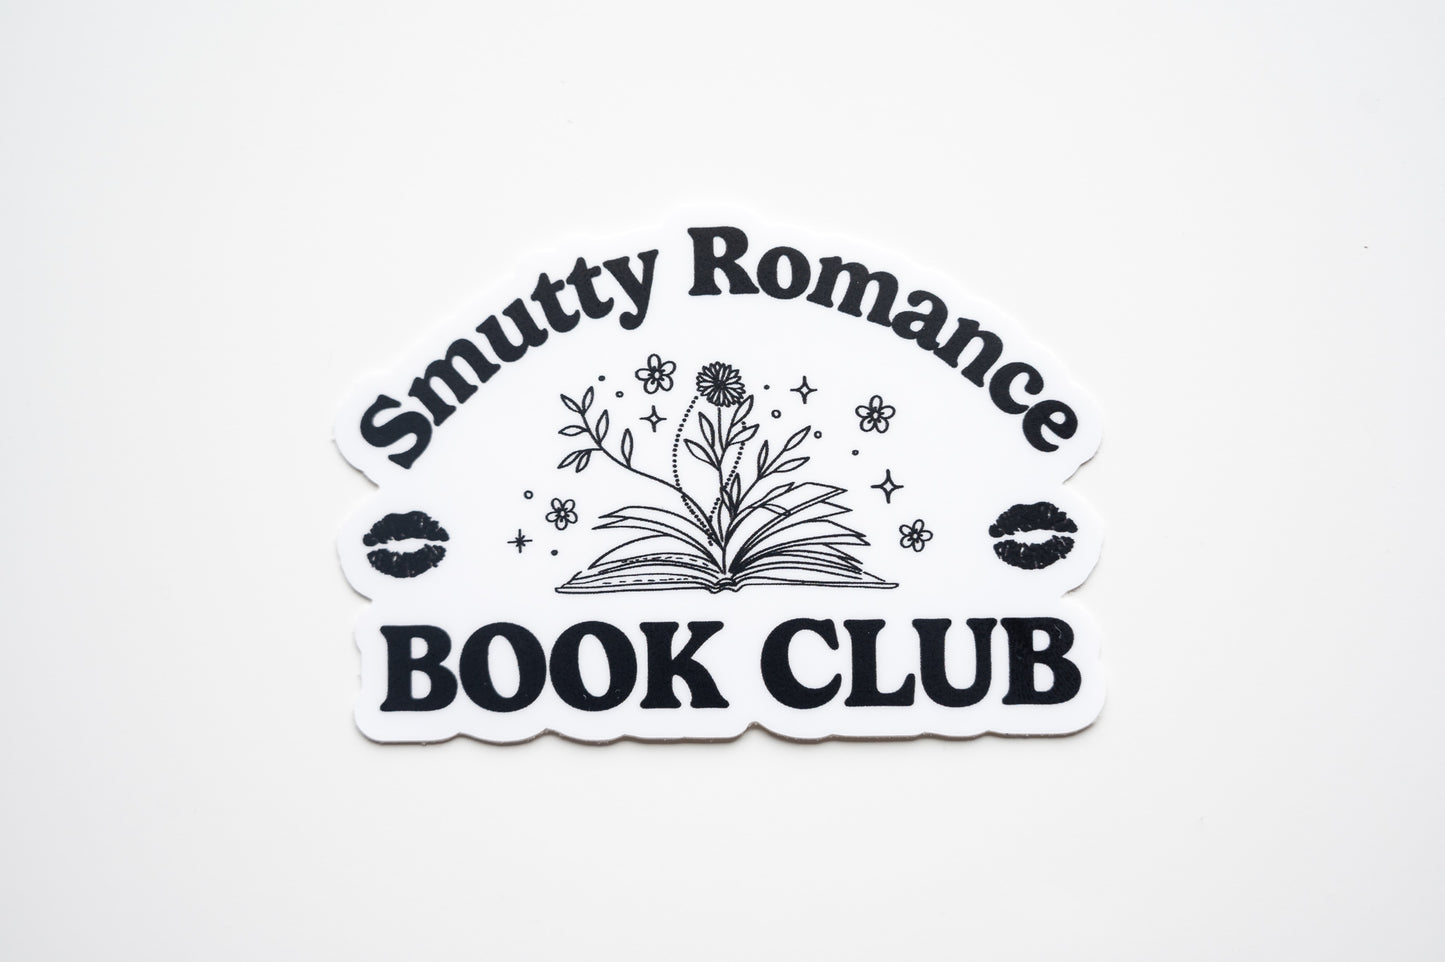 Smutty Romance Book Club Vinyl Sticker